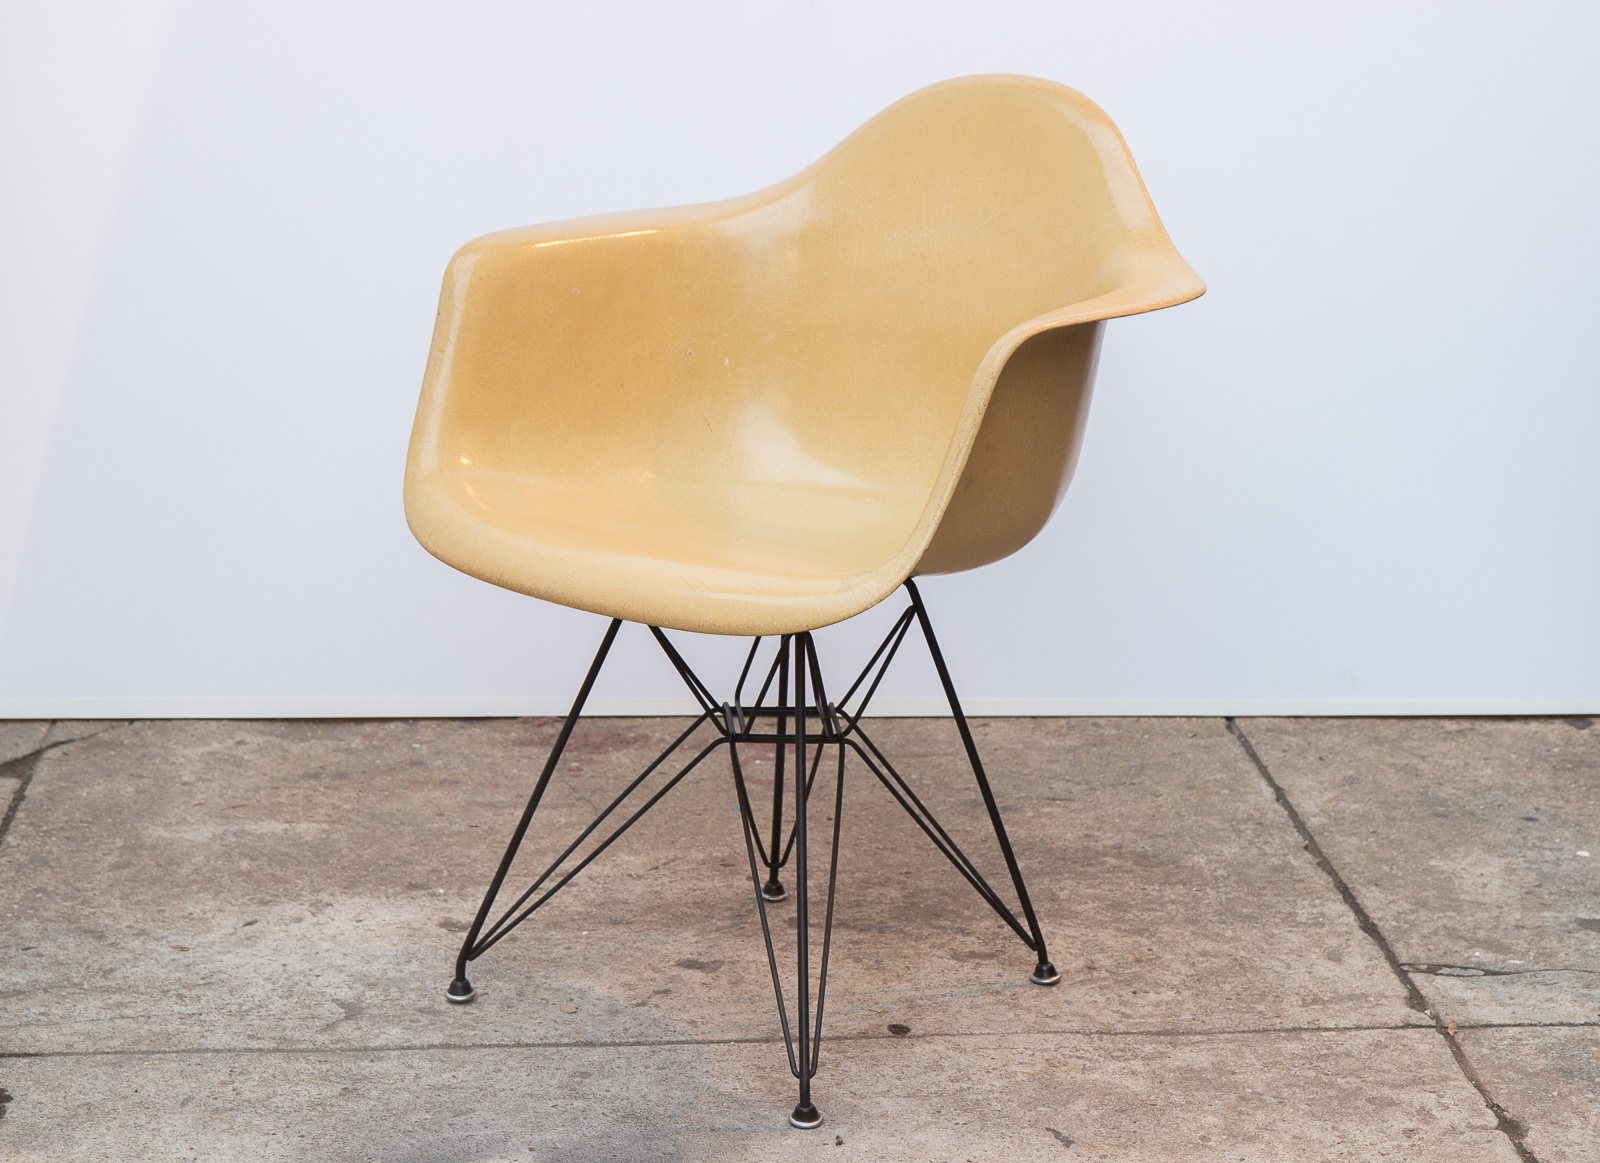 Herman Miller Eames Fiberglass Side Shell Chairs Ochre Neutral Yellow 